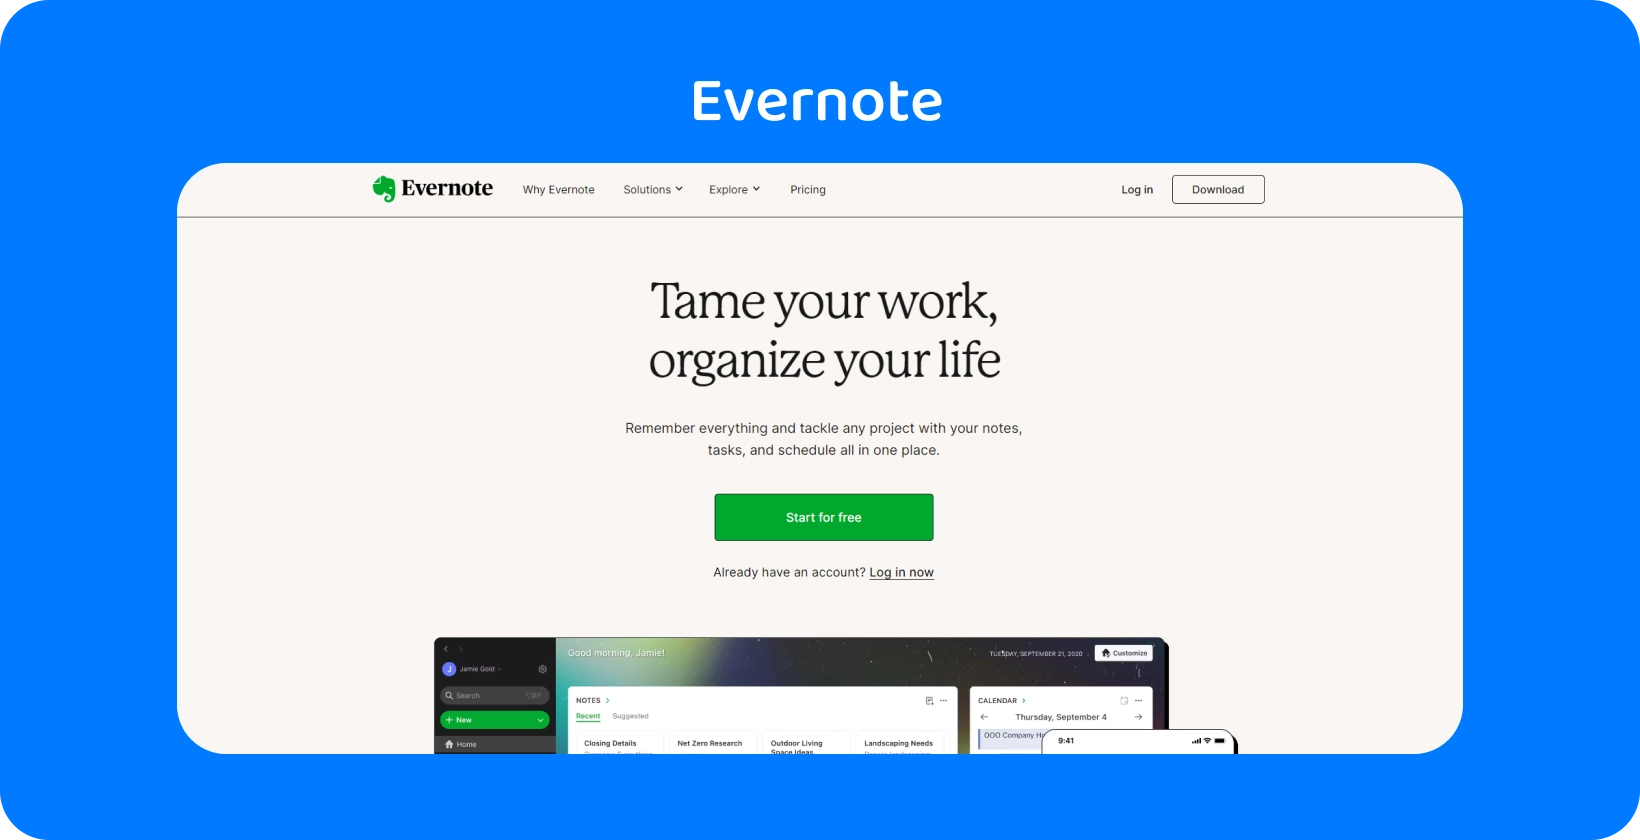 דף הבית Evernote המדגיש תכונות ארגוניות, בדומה לתמלול פגישות של האפליקציה שלנו לעורכי דין.